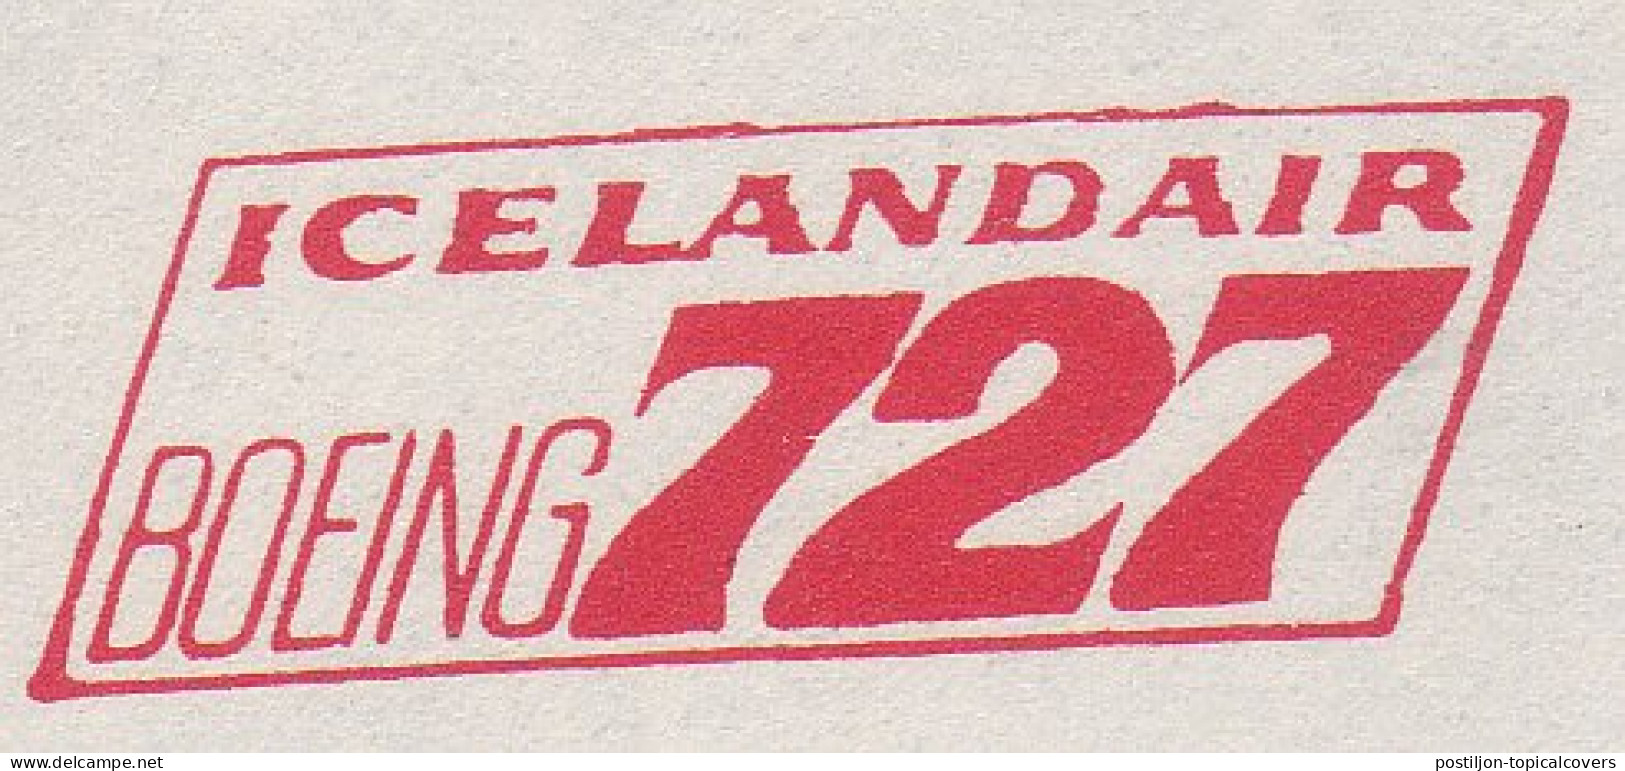 Proof / Specimen Meter Cut Iceland 1970 IcelandAir - Boeing 727 - Avions